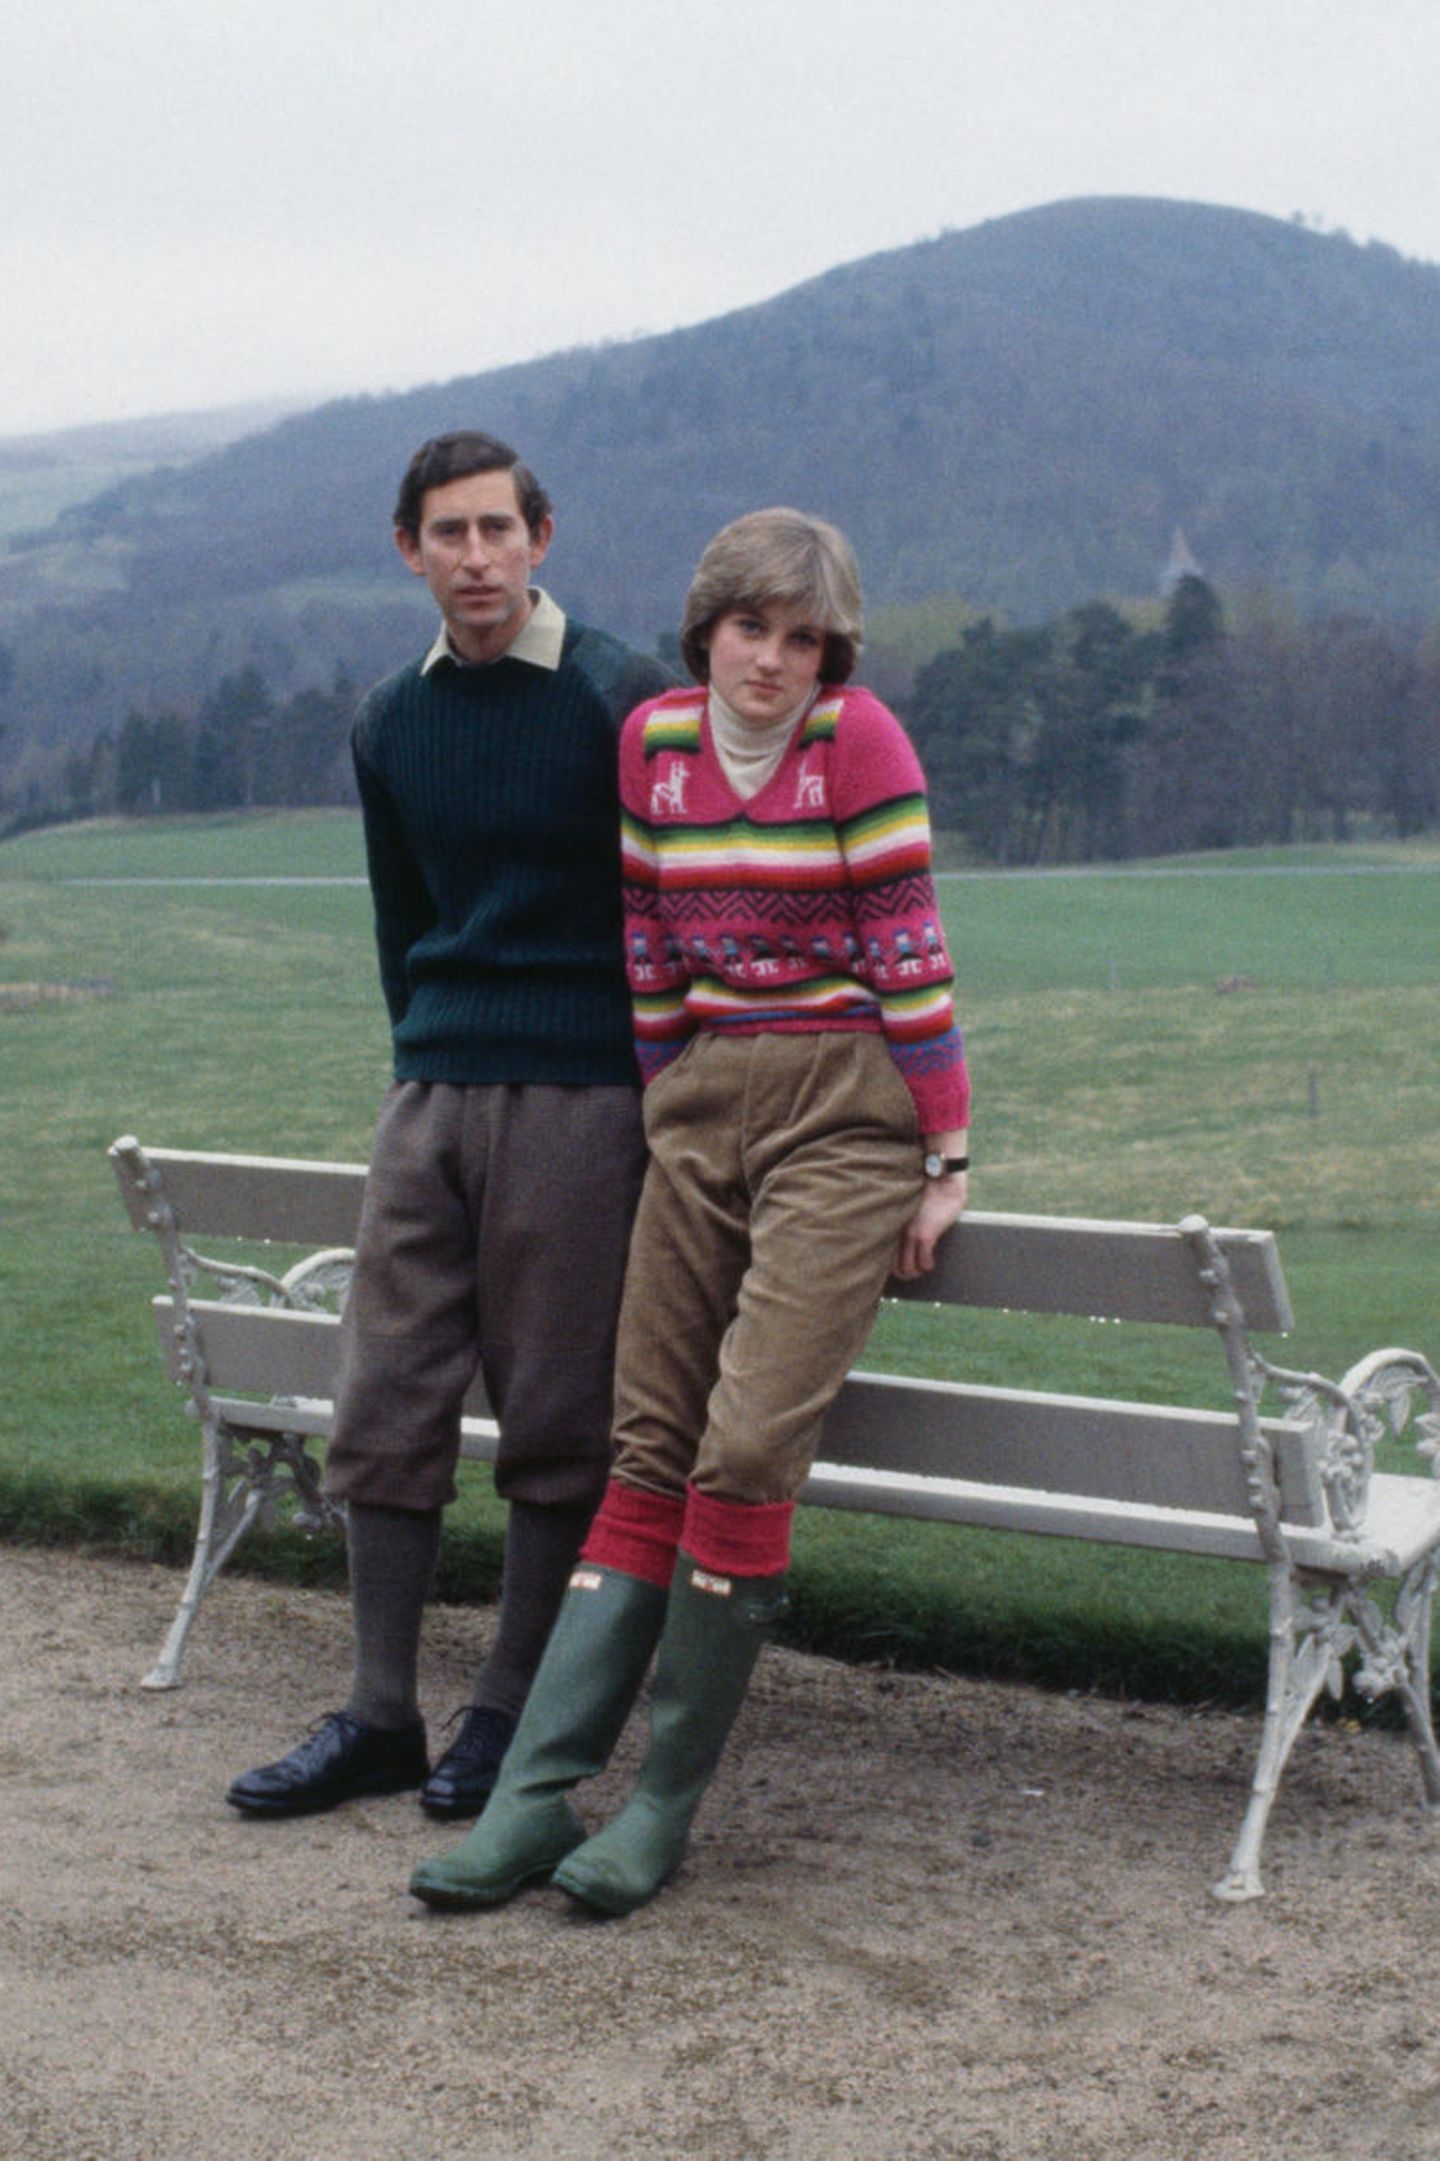 Gummistiefel sind nichts für Prinzessinnen? Falsch gedacht: Auch Lady war Fan des britischen Kultlabels und präsentierte hier zusammen mit Prinz Charles ihre Stiefel in Schlammgrün. 